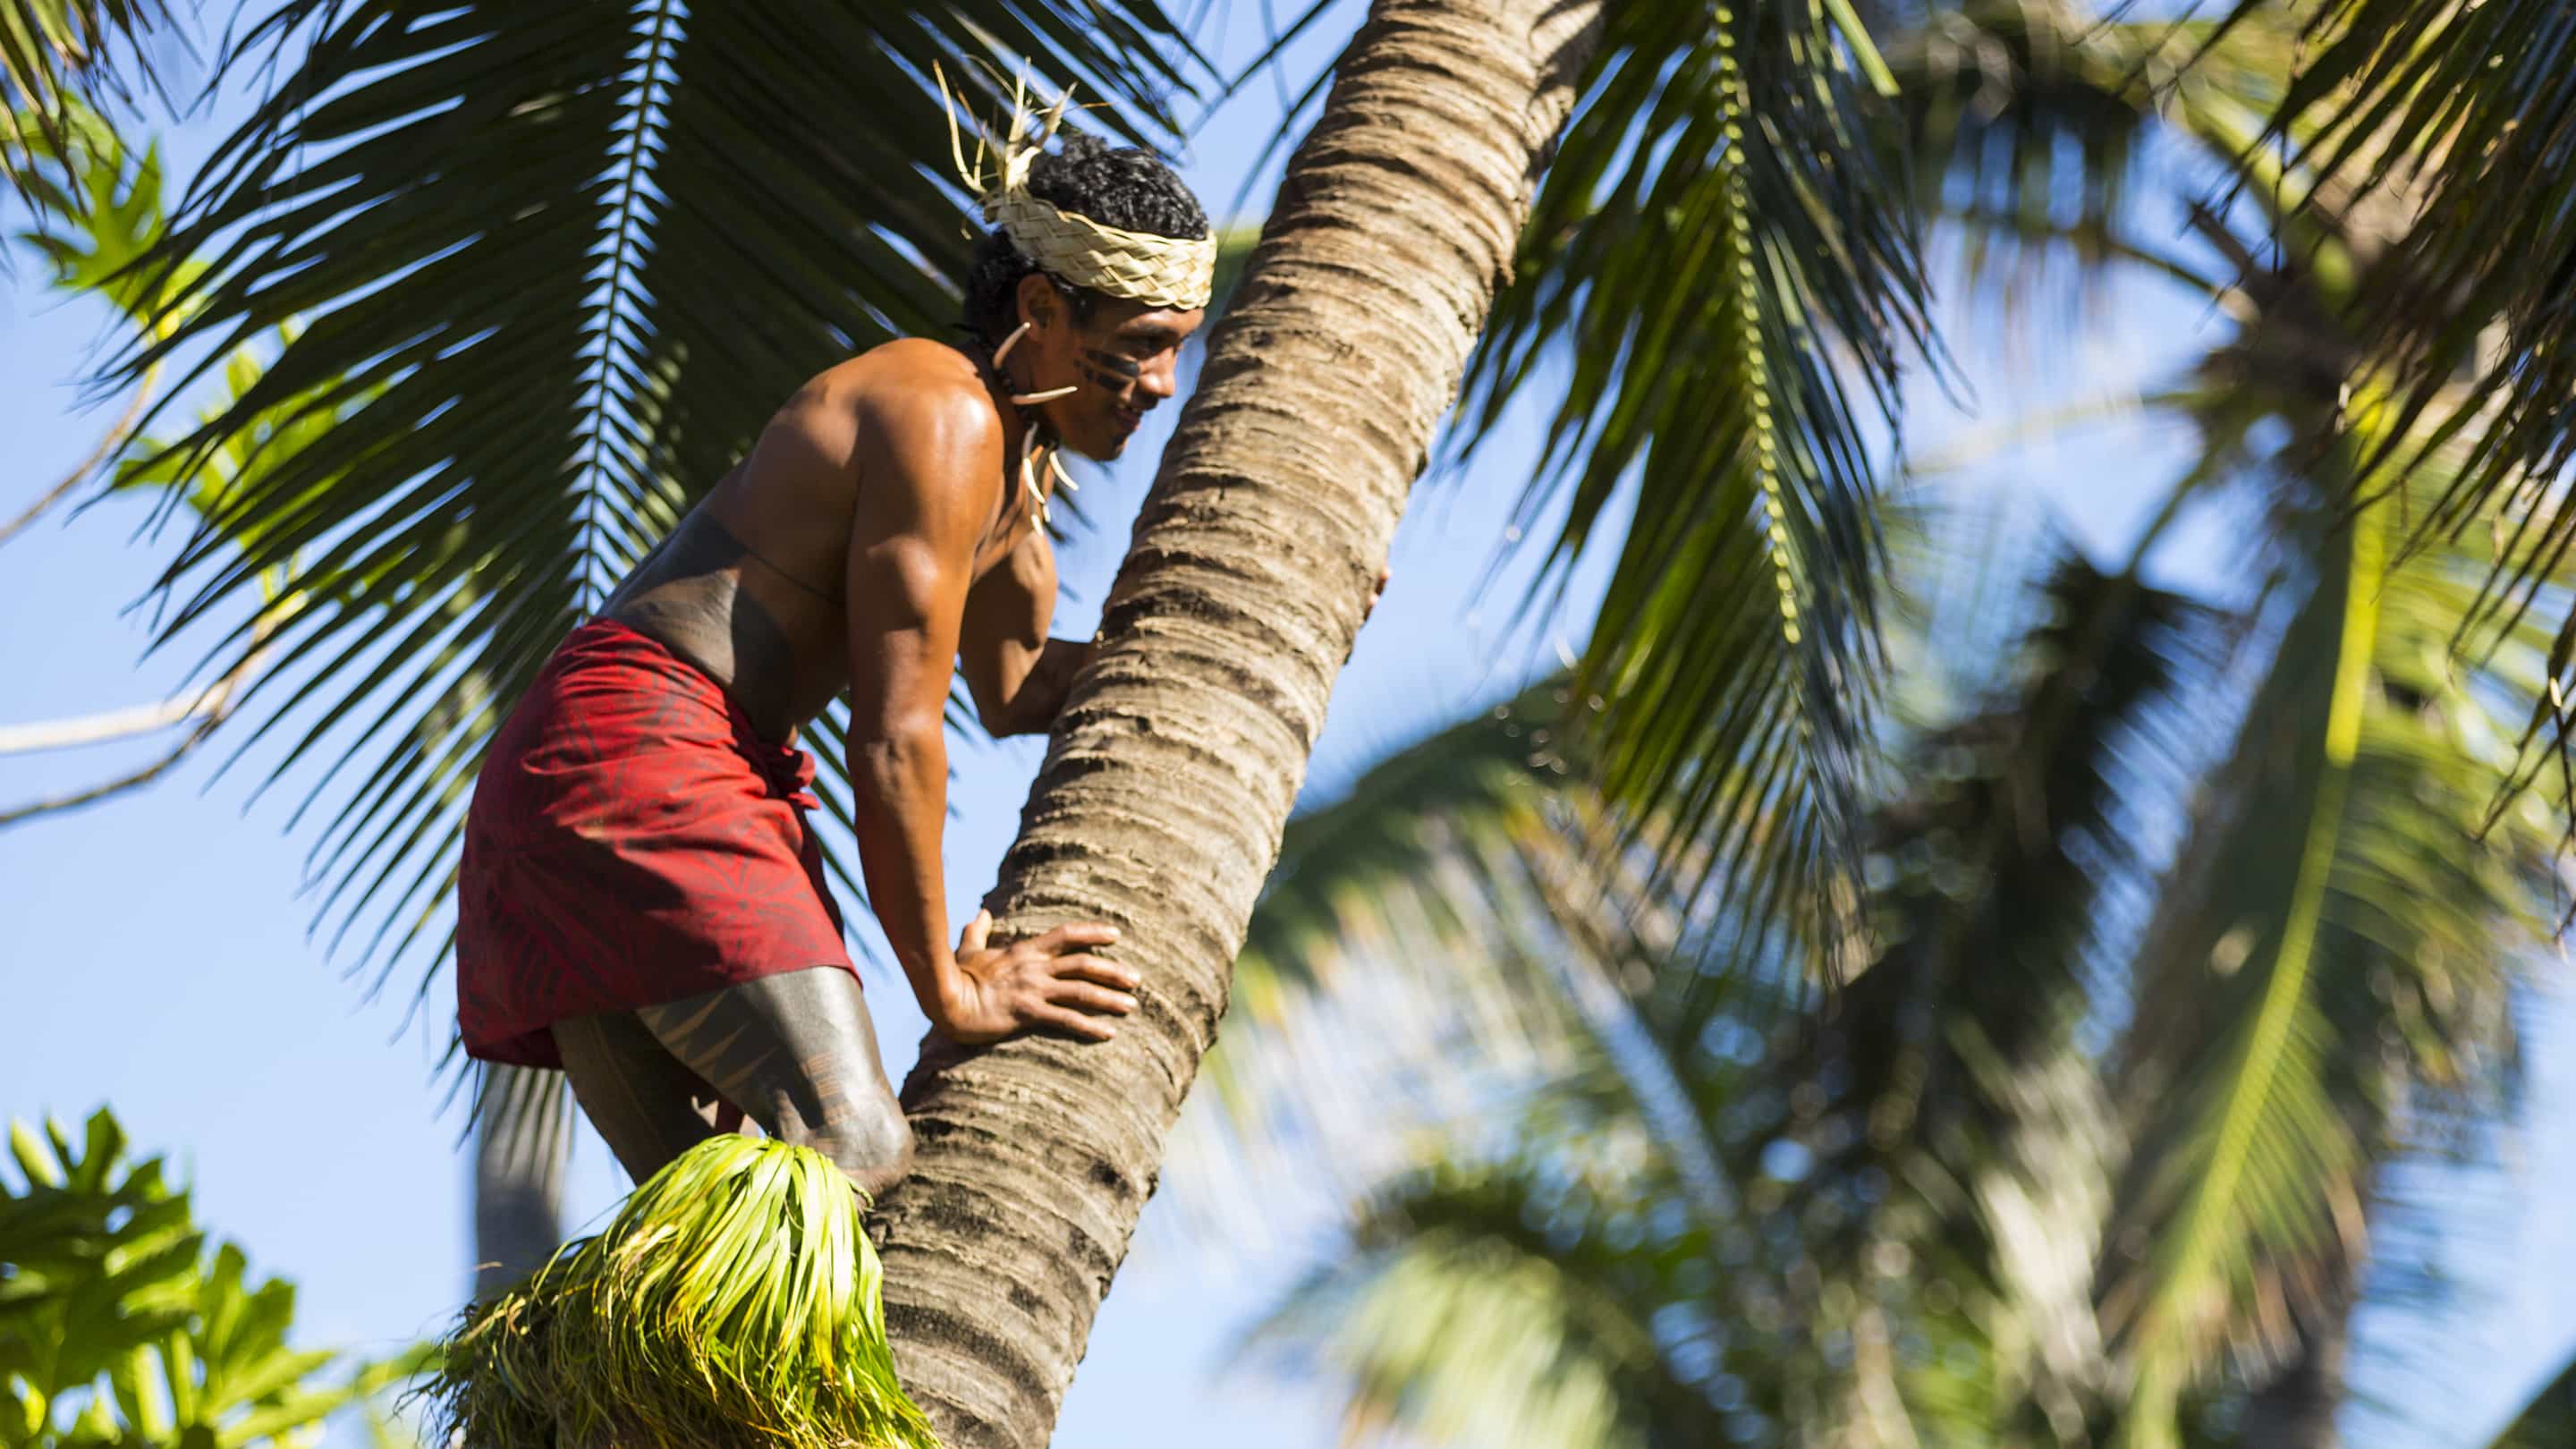 Samoa Climbing the Coconut Tree